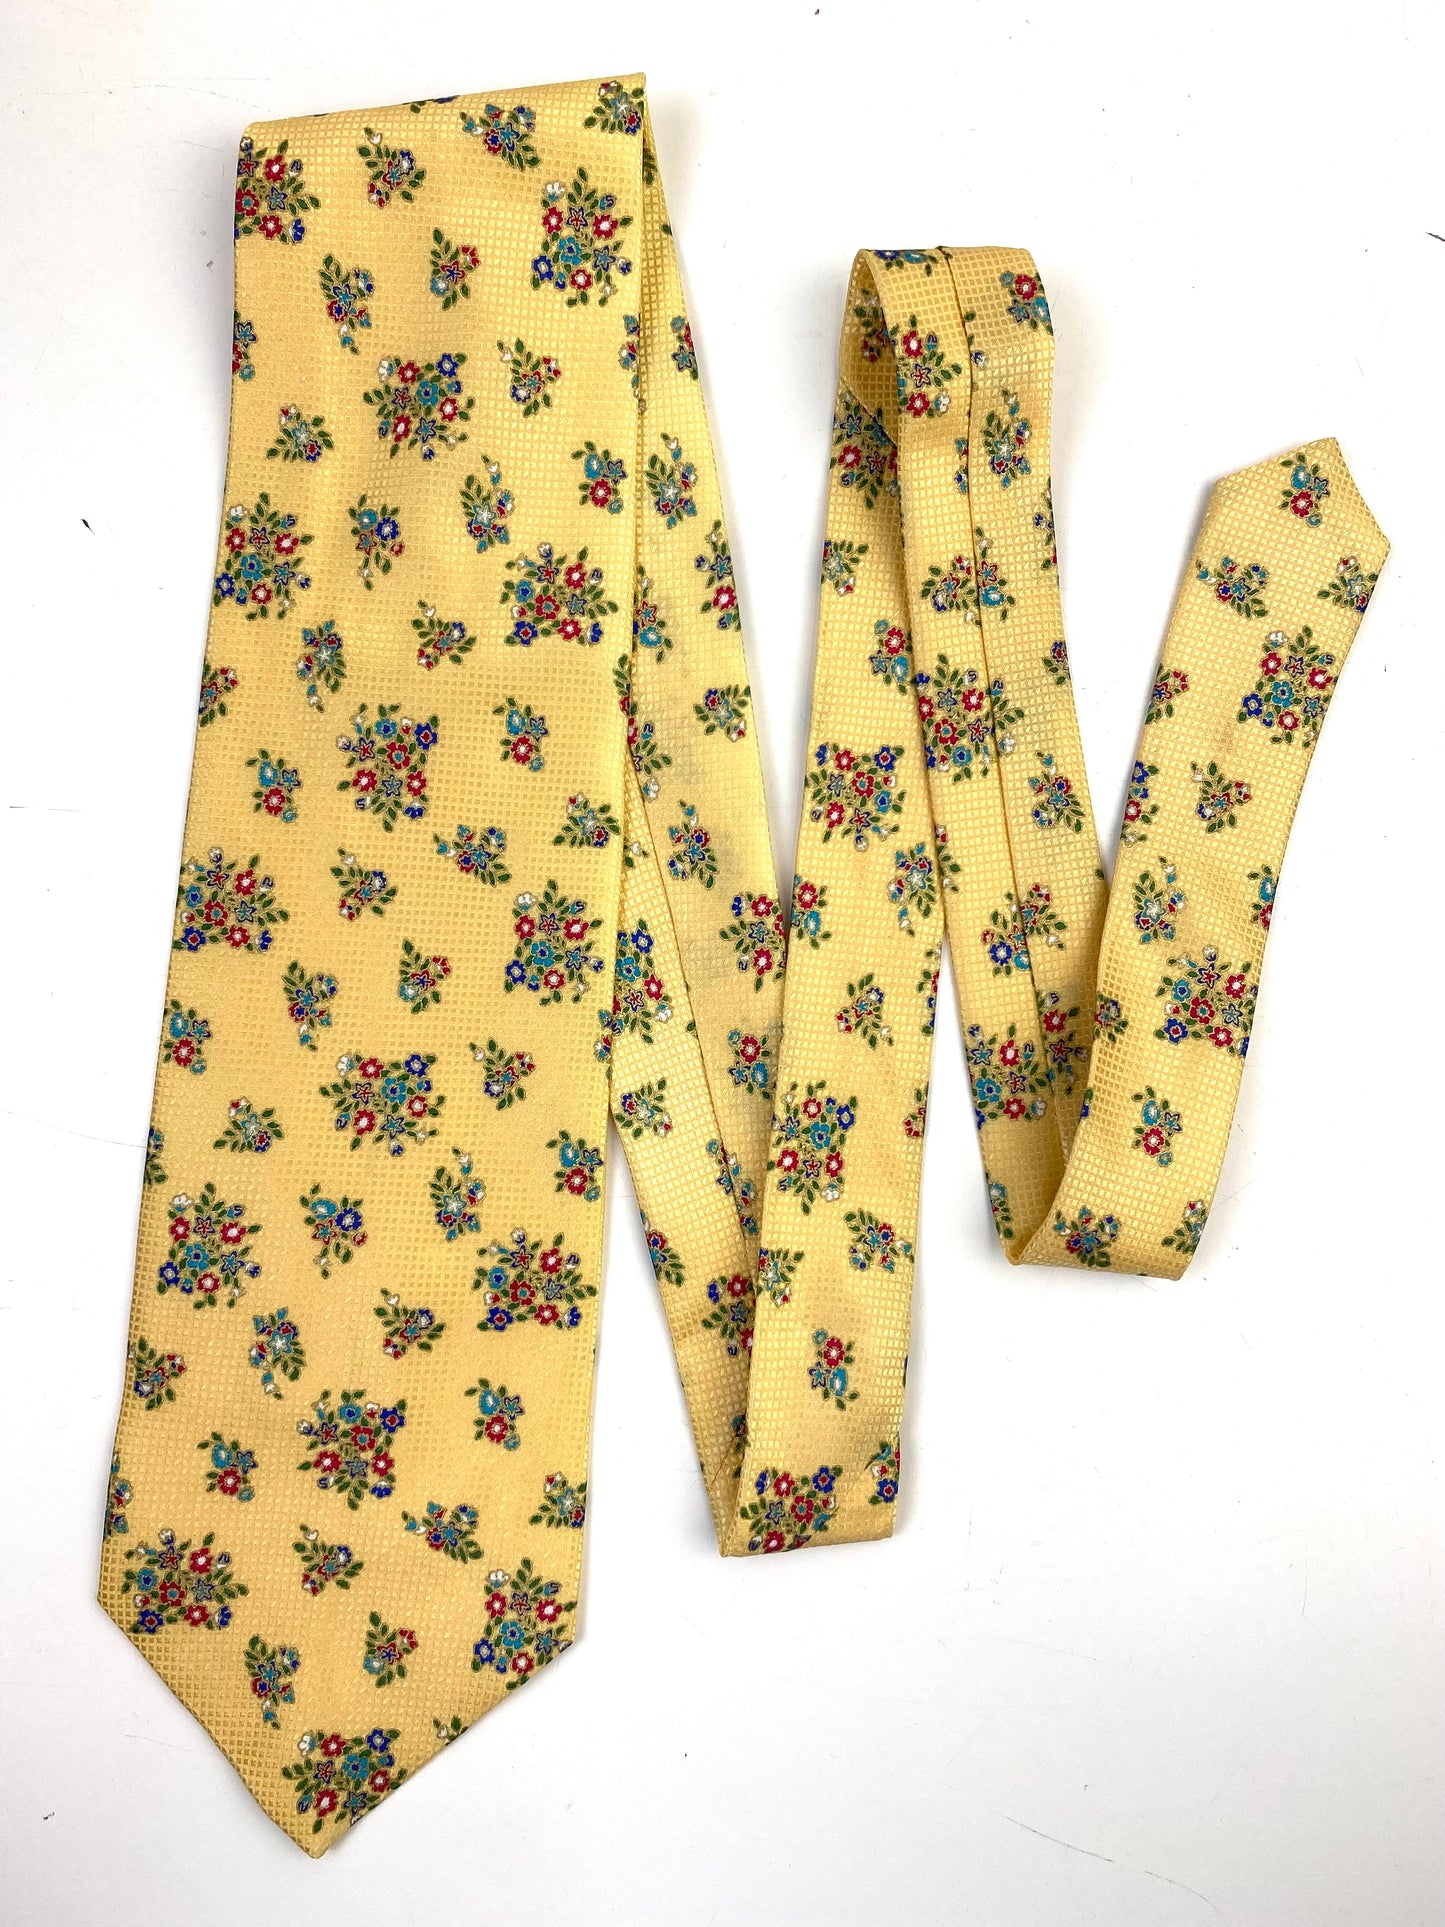 90s Deadstock Silk Necktie, Men's Vintage Gold Floral Pattern Tie, NOS